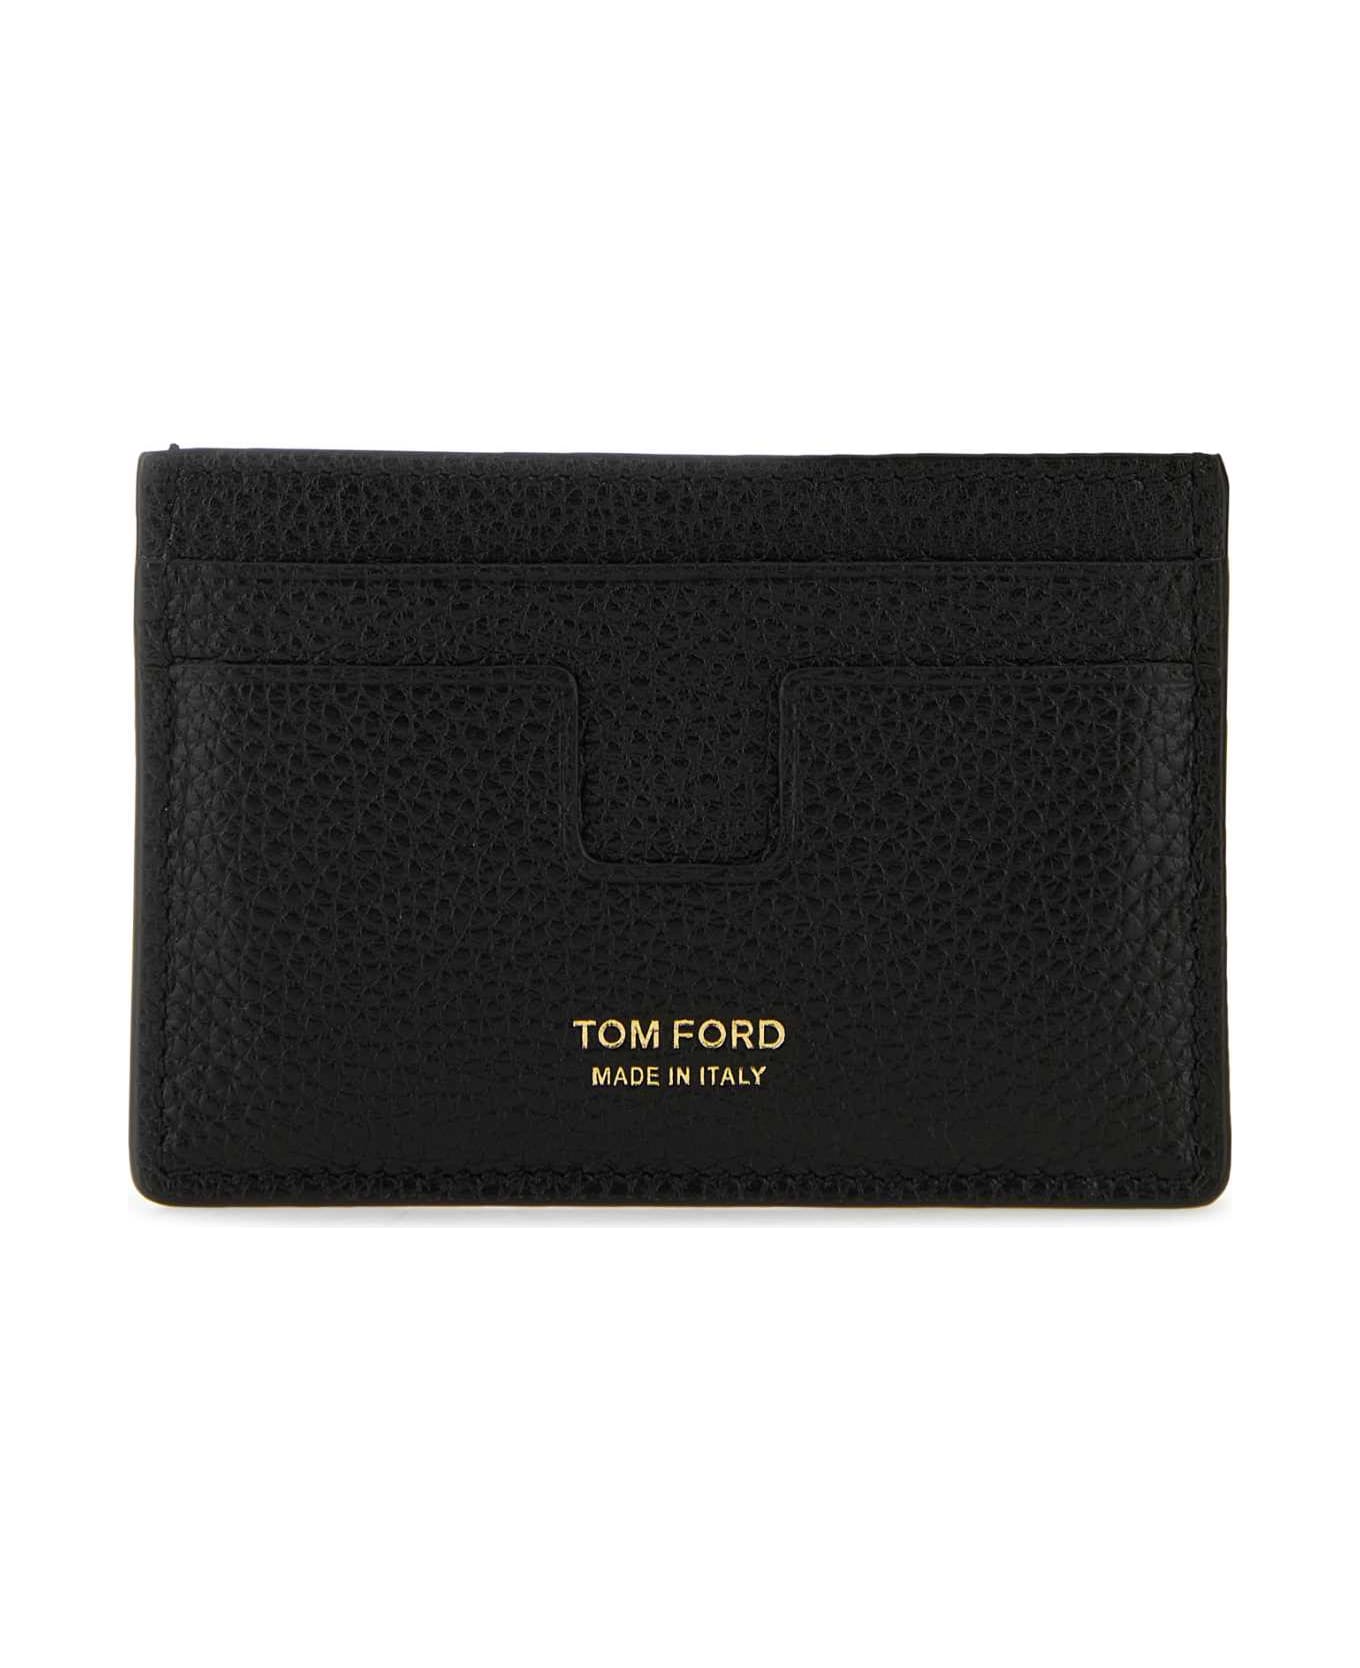 Tom Ford Black Leather Card Holder - BLACK